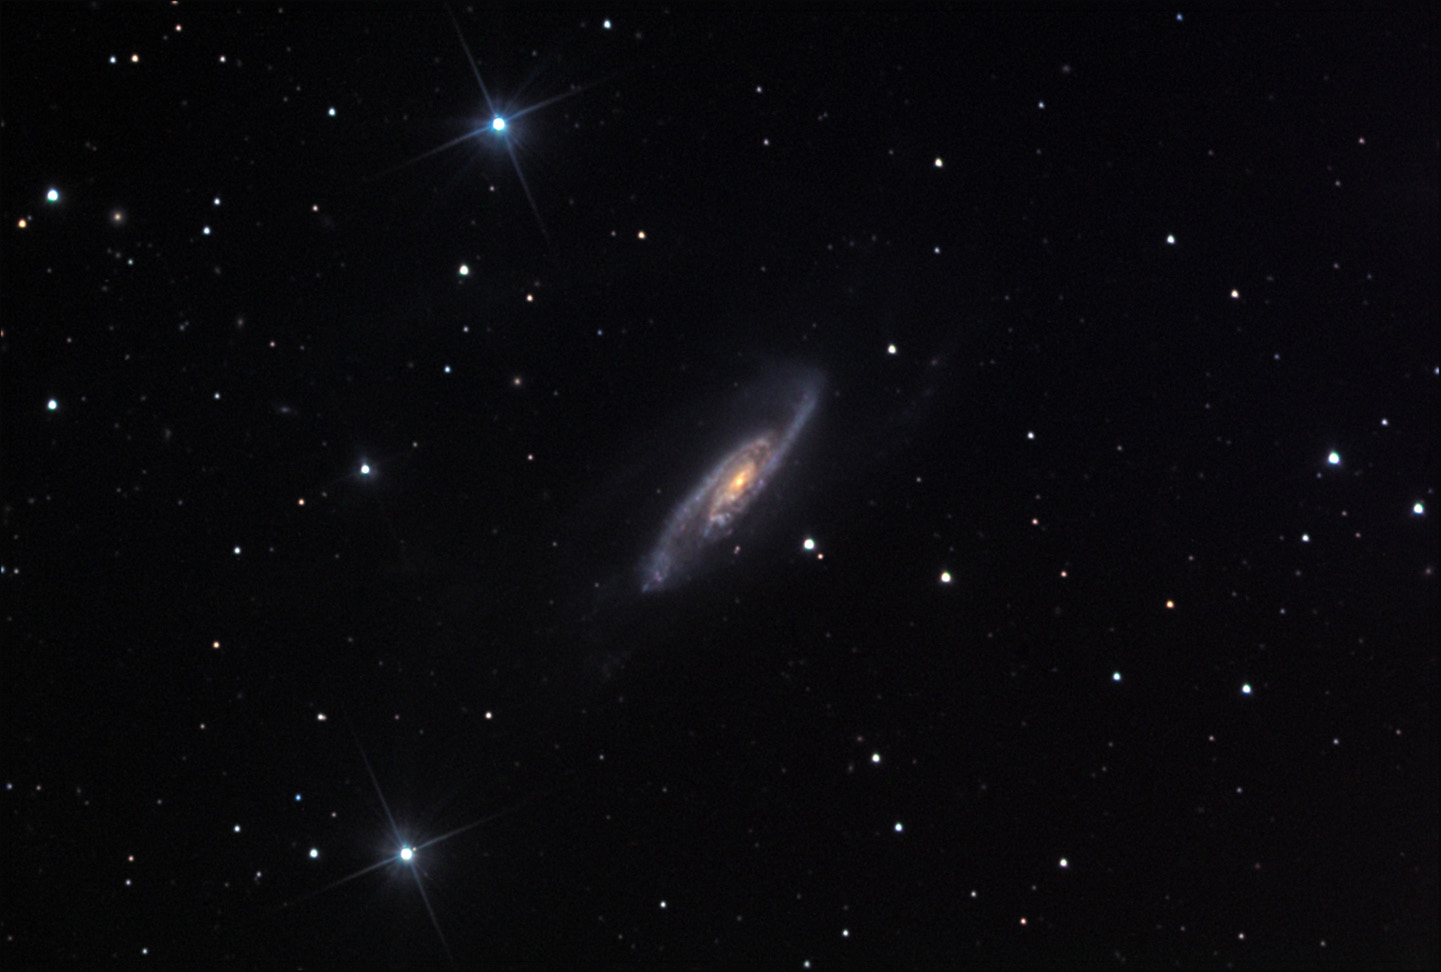 NGC 3981